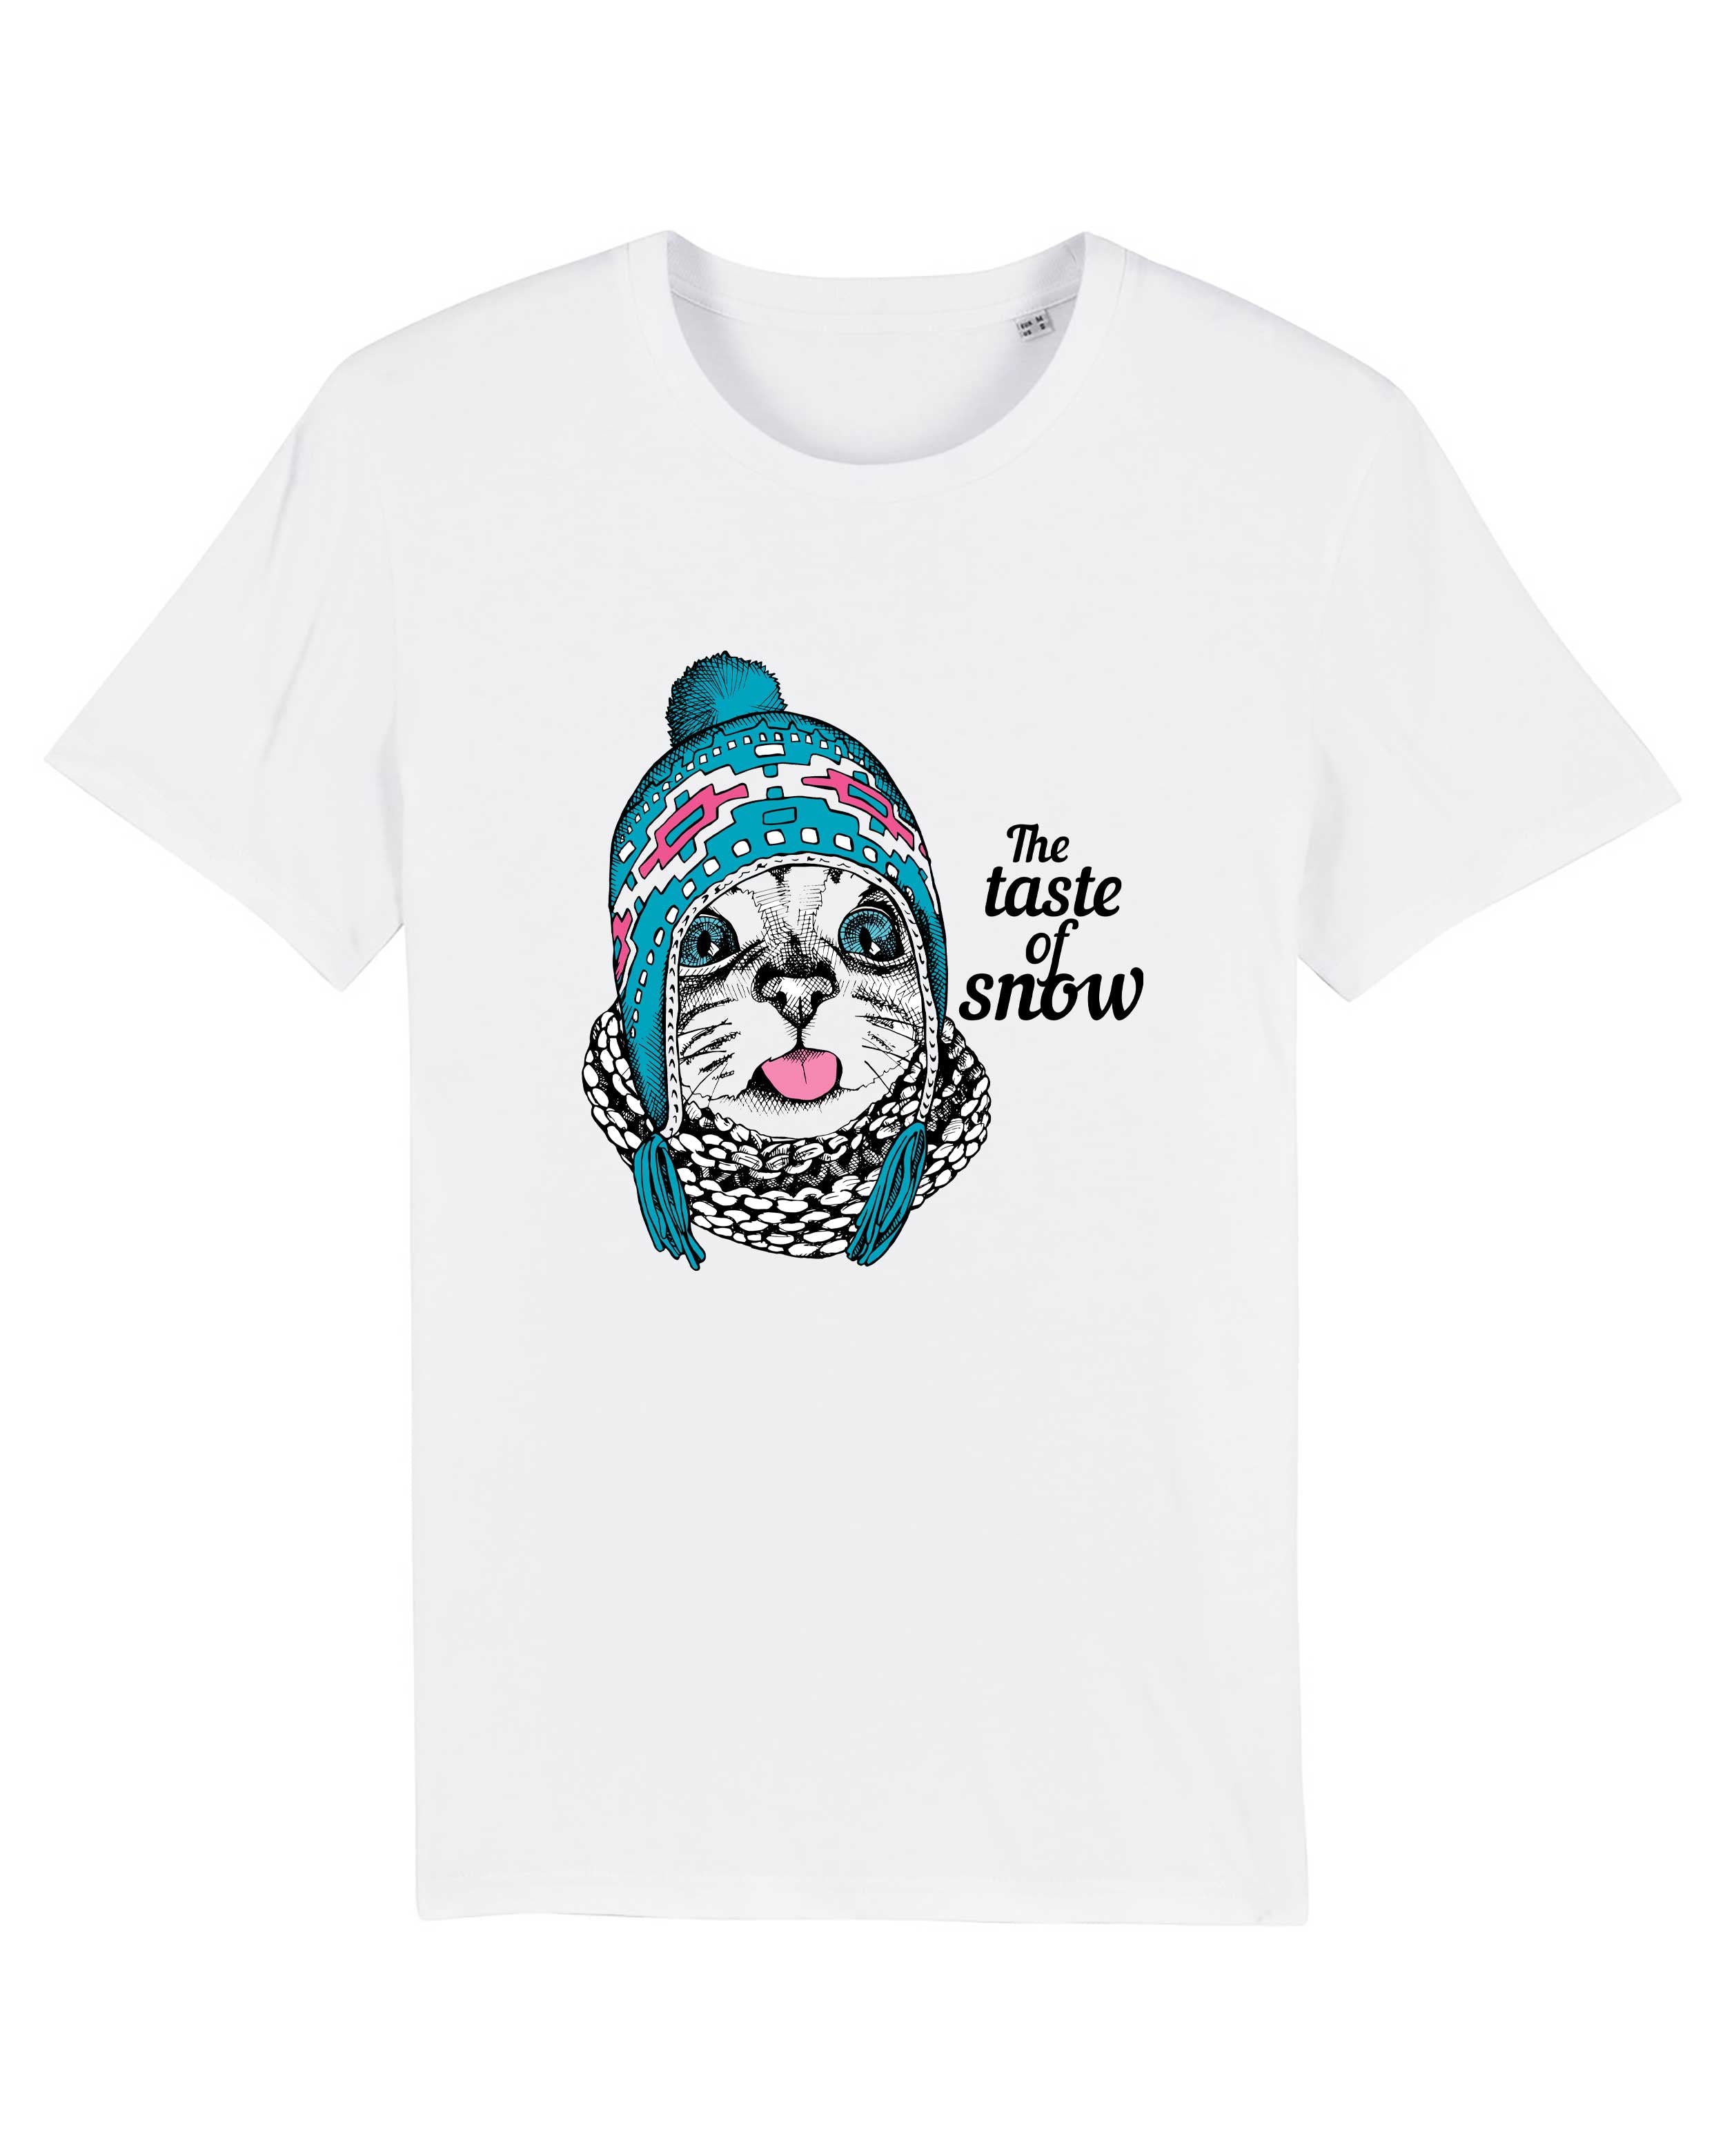 T-Shirt Taste of Snow Katze, Bio-Baumwolle, Unisex, Damen, Kids